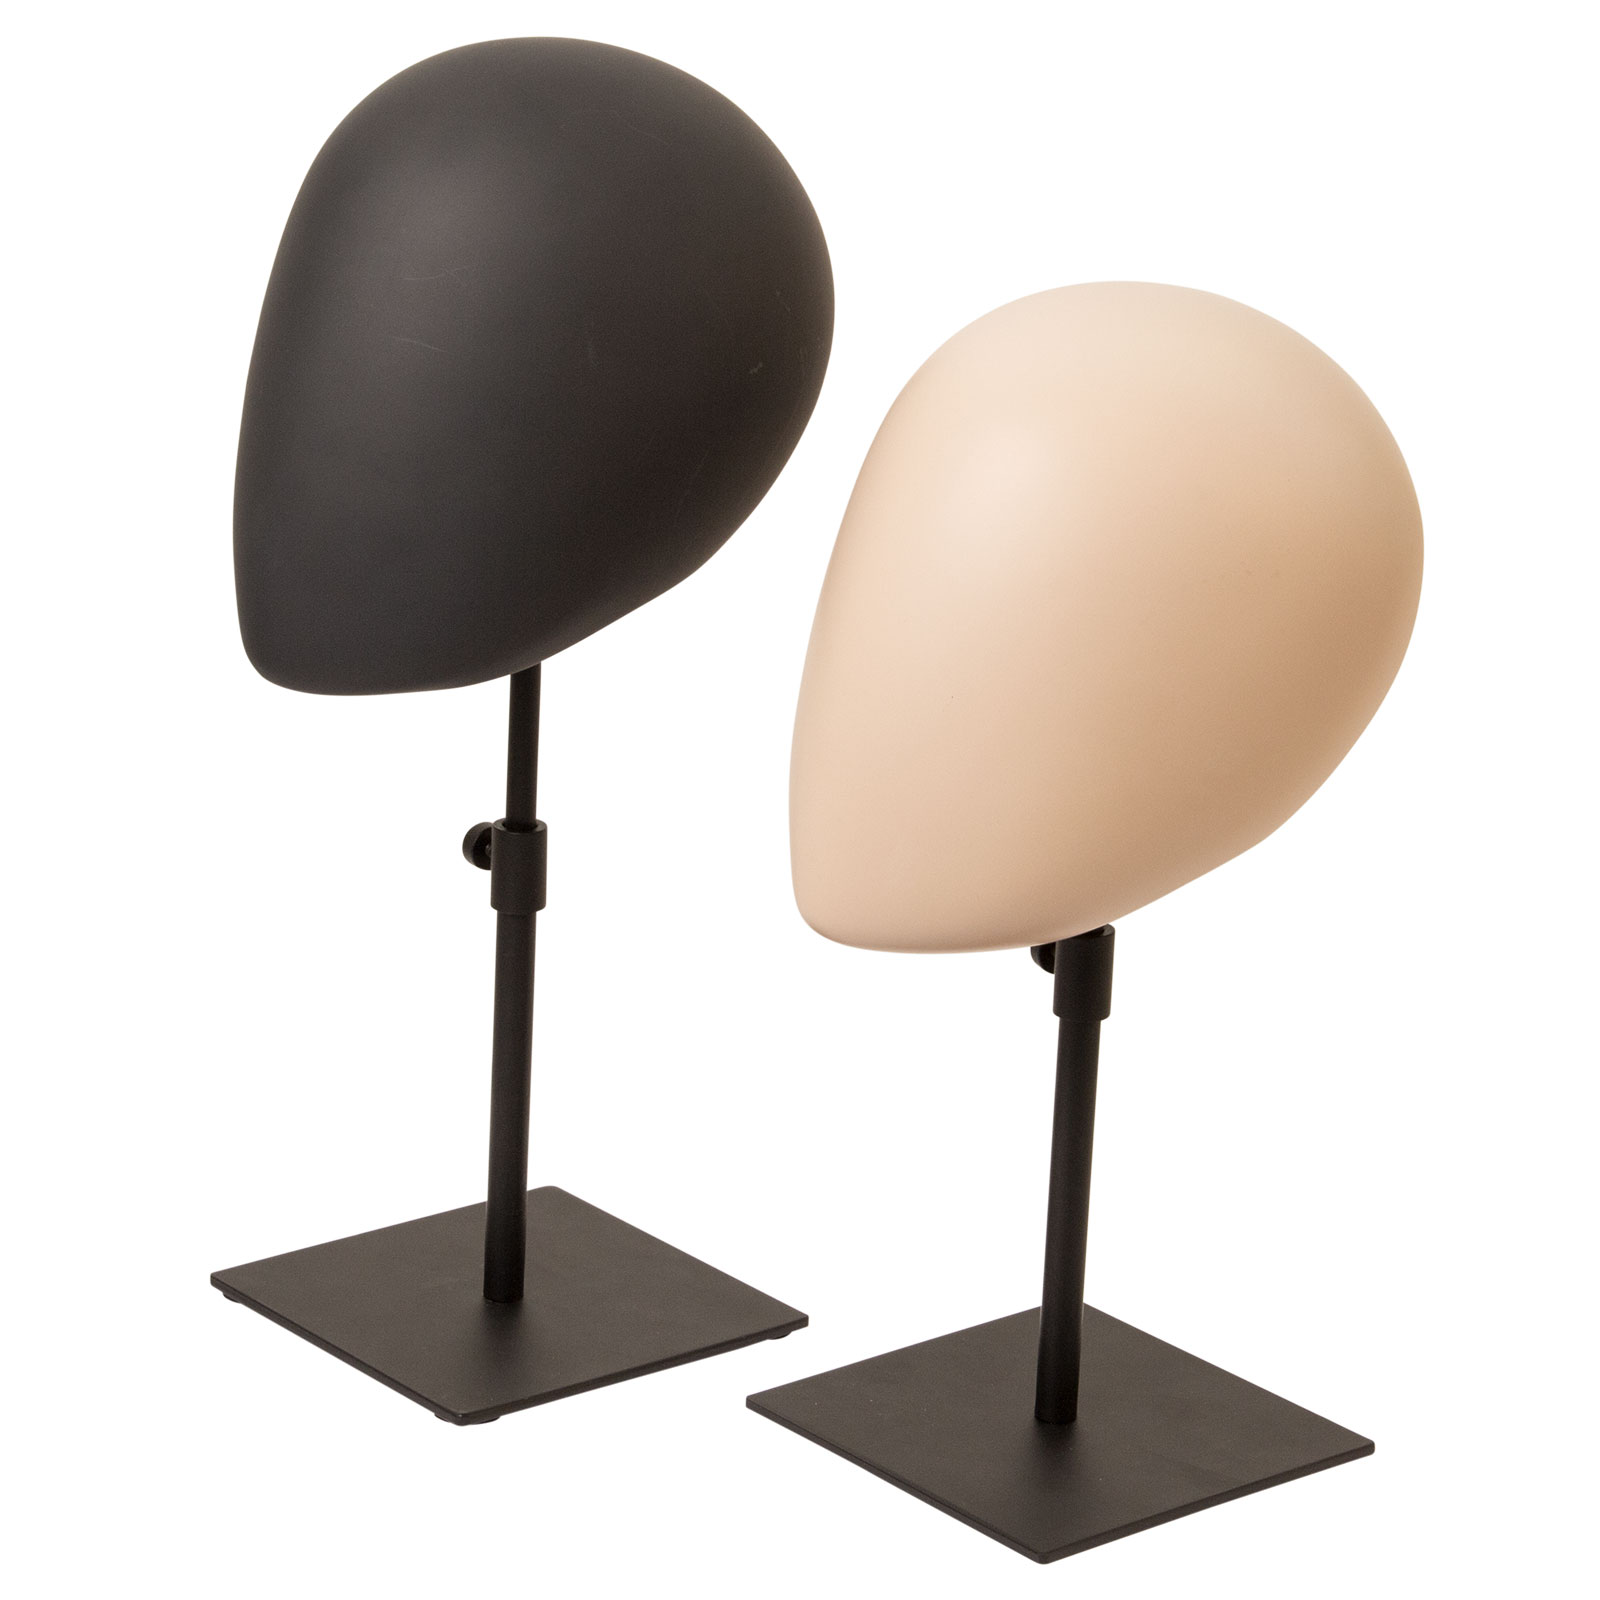 Deco Wig Head With Metal Base 32cm a 45cm (Cabeças decorativas com base de metal 32cm a 45cm)   - Anthracite